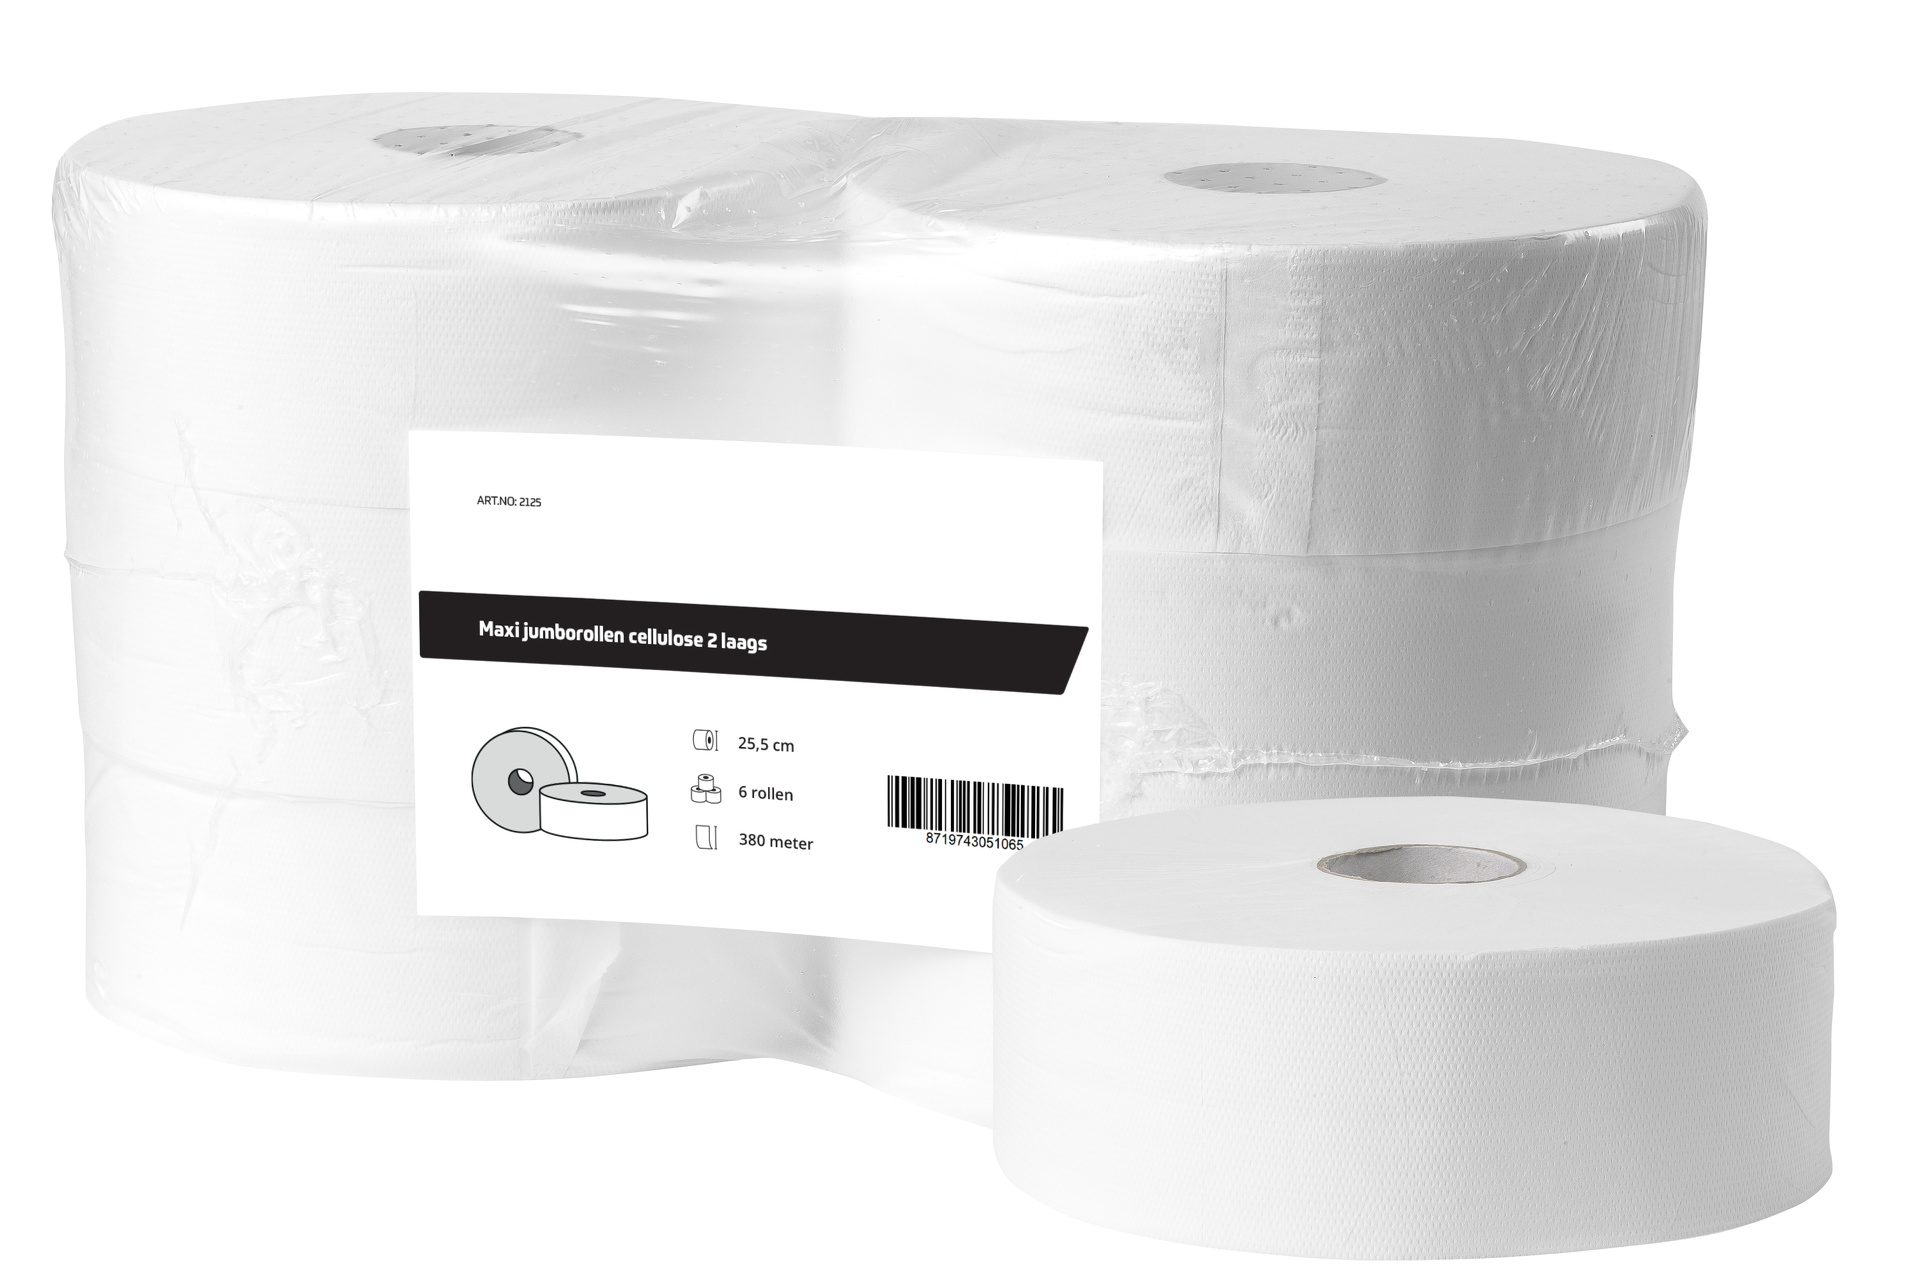 Maxi jumborollen cellulose 2-laags - Verpakking 6x 380 meter